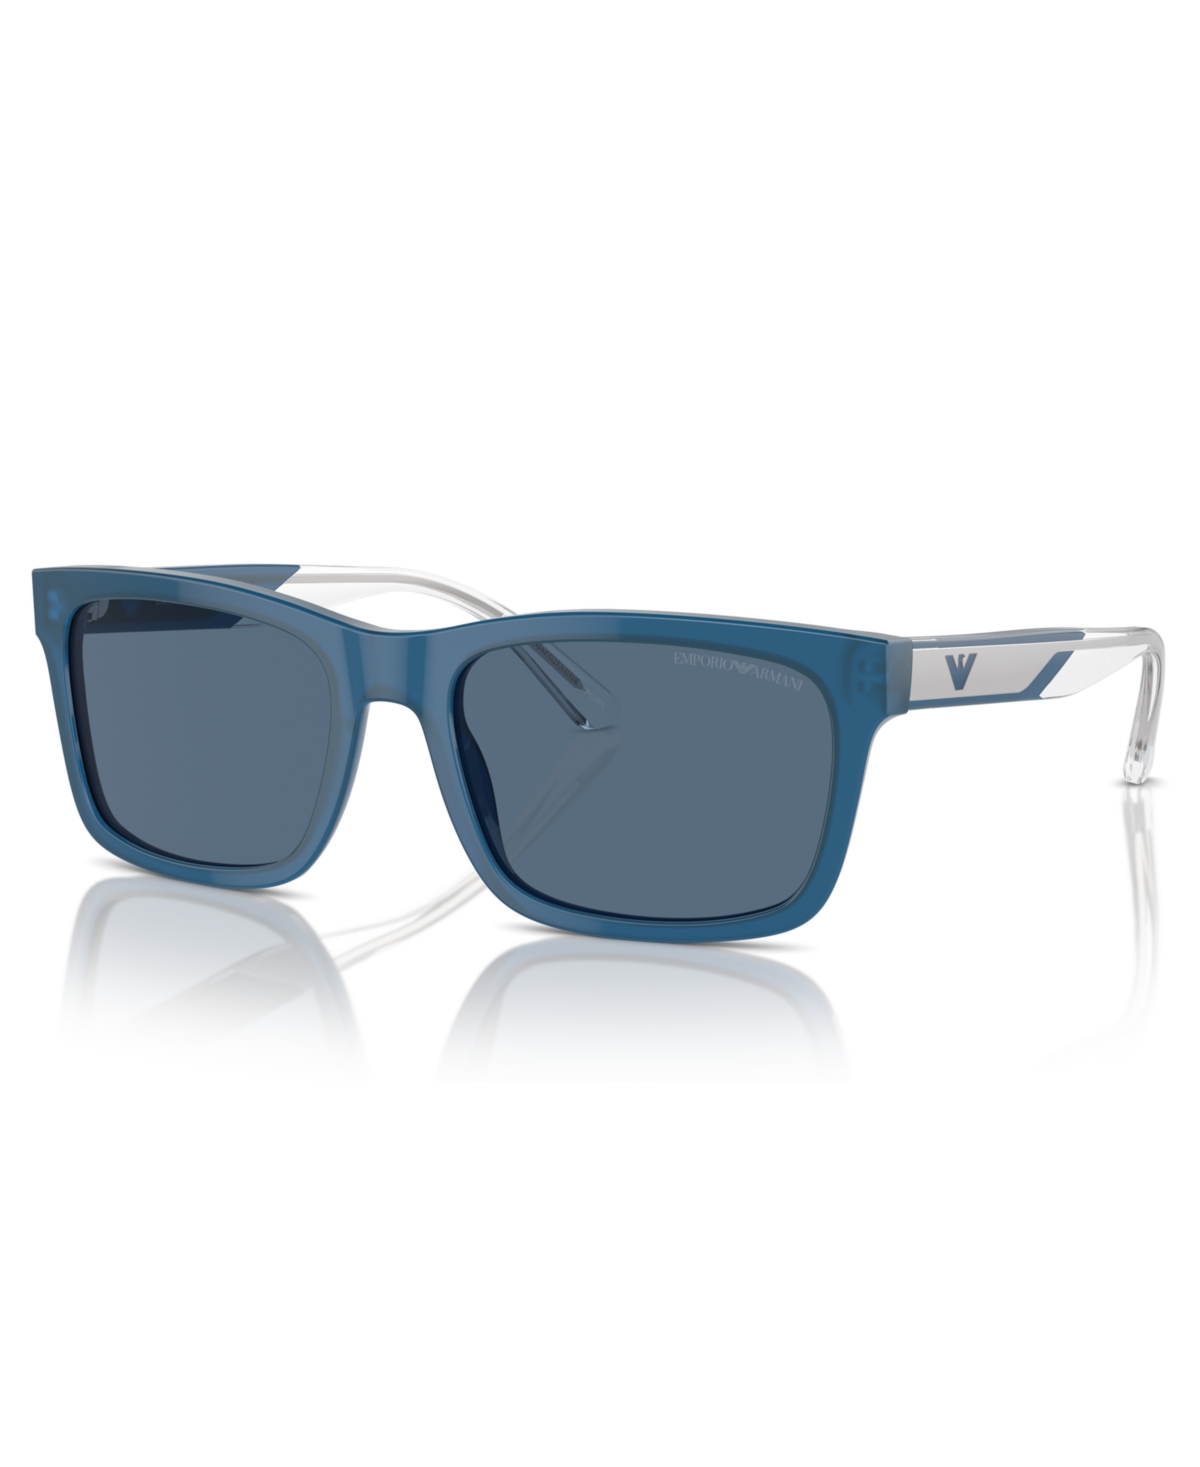 Emporio Armani Men's Sunglasses, Ea4224 In Shiny Opaline Blue